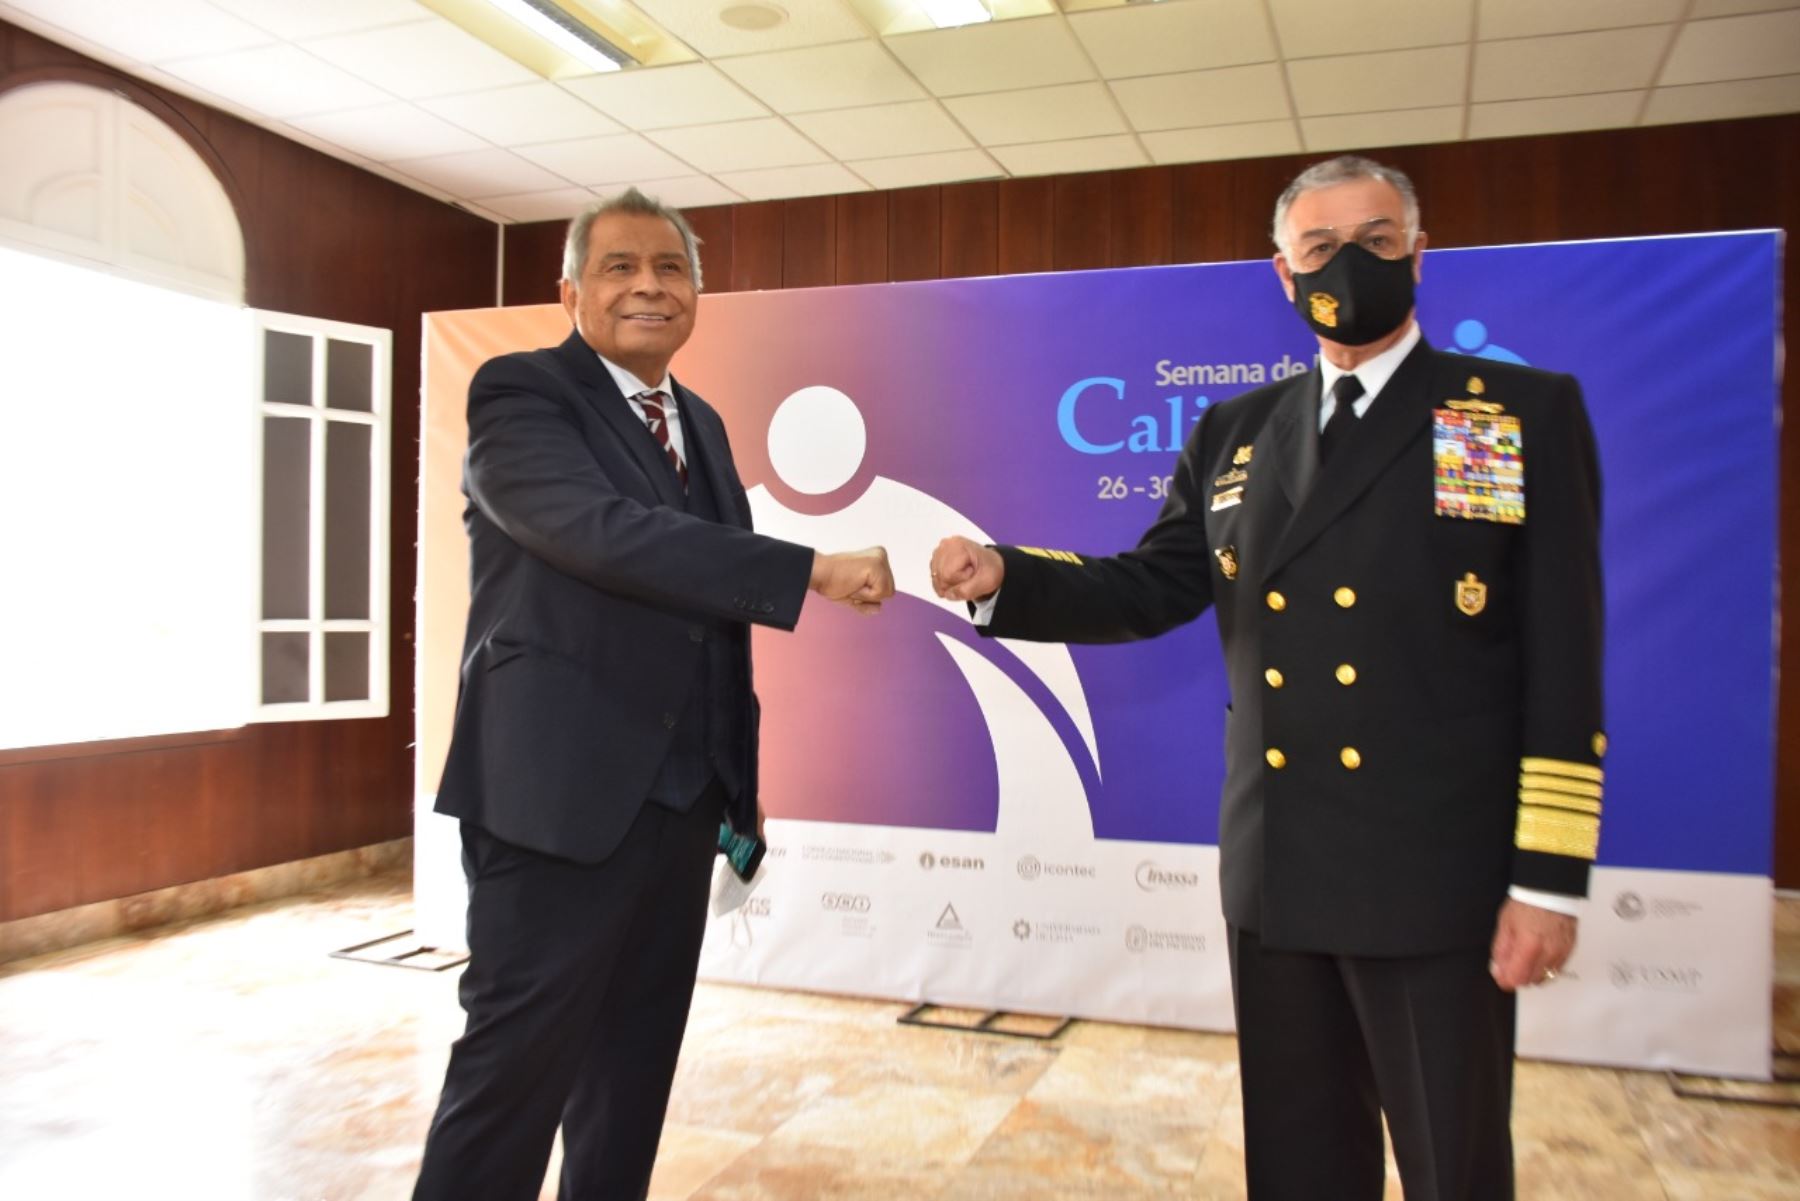 Marina de Guerra del Perú recibió el “Premio Nacional a la Calidad” y la medalla Líder en Calidad categoría Oro